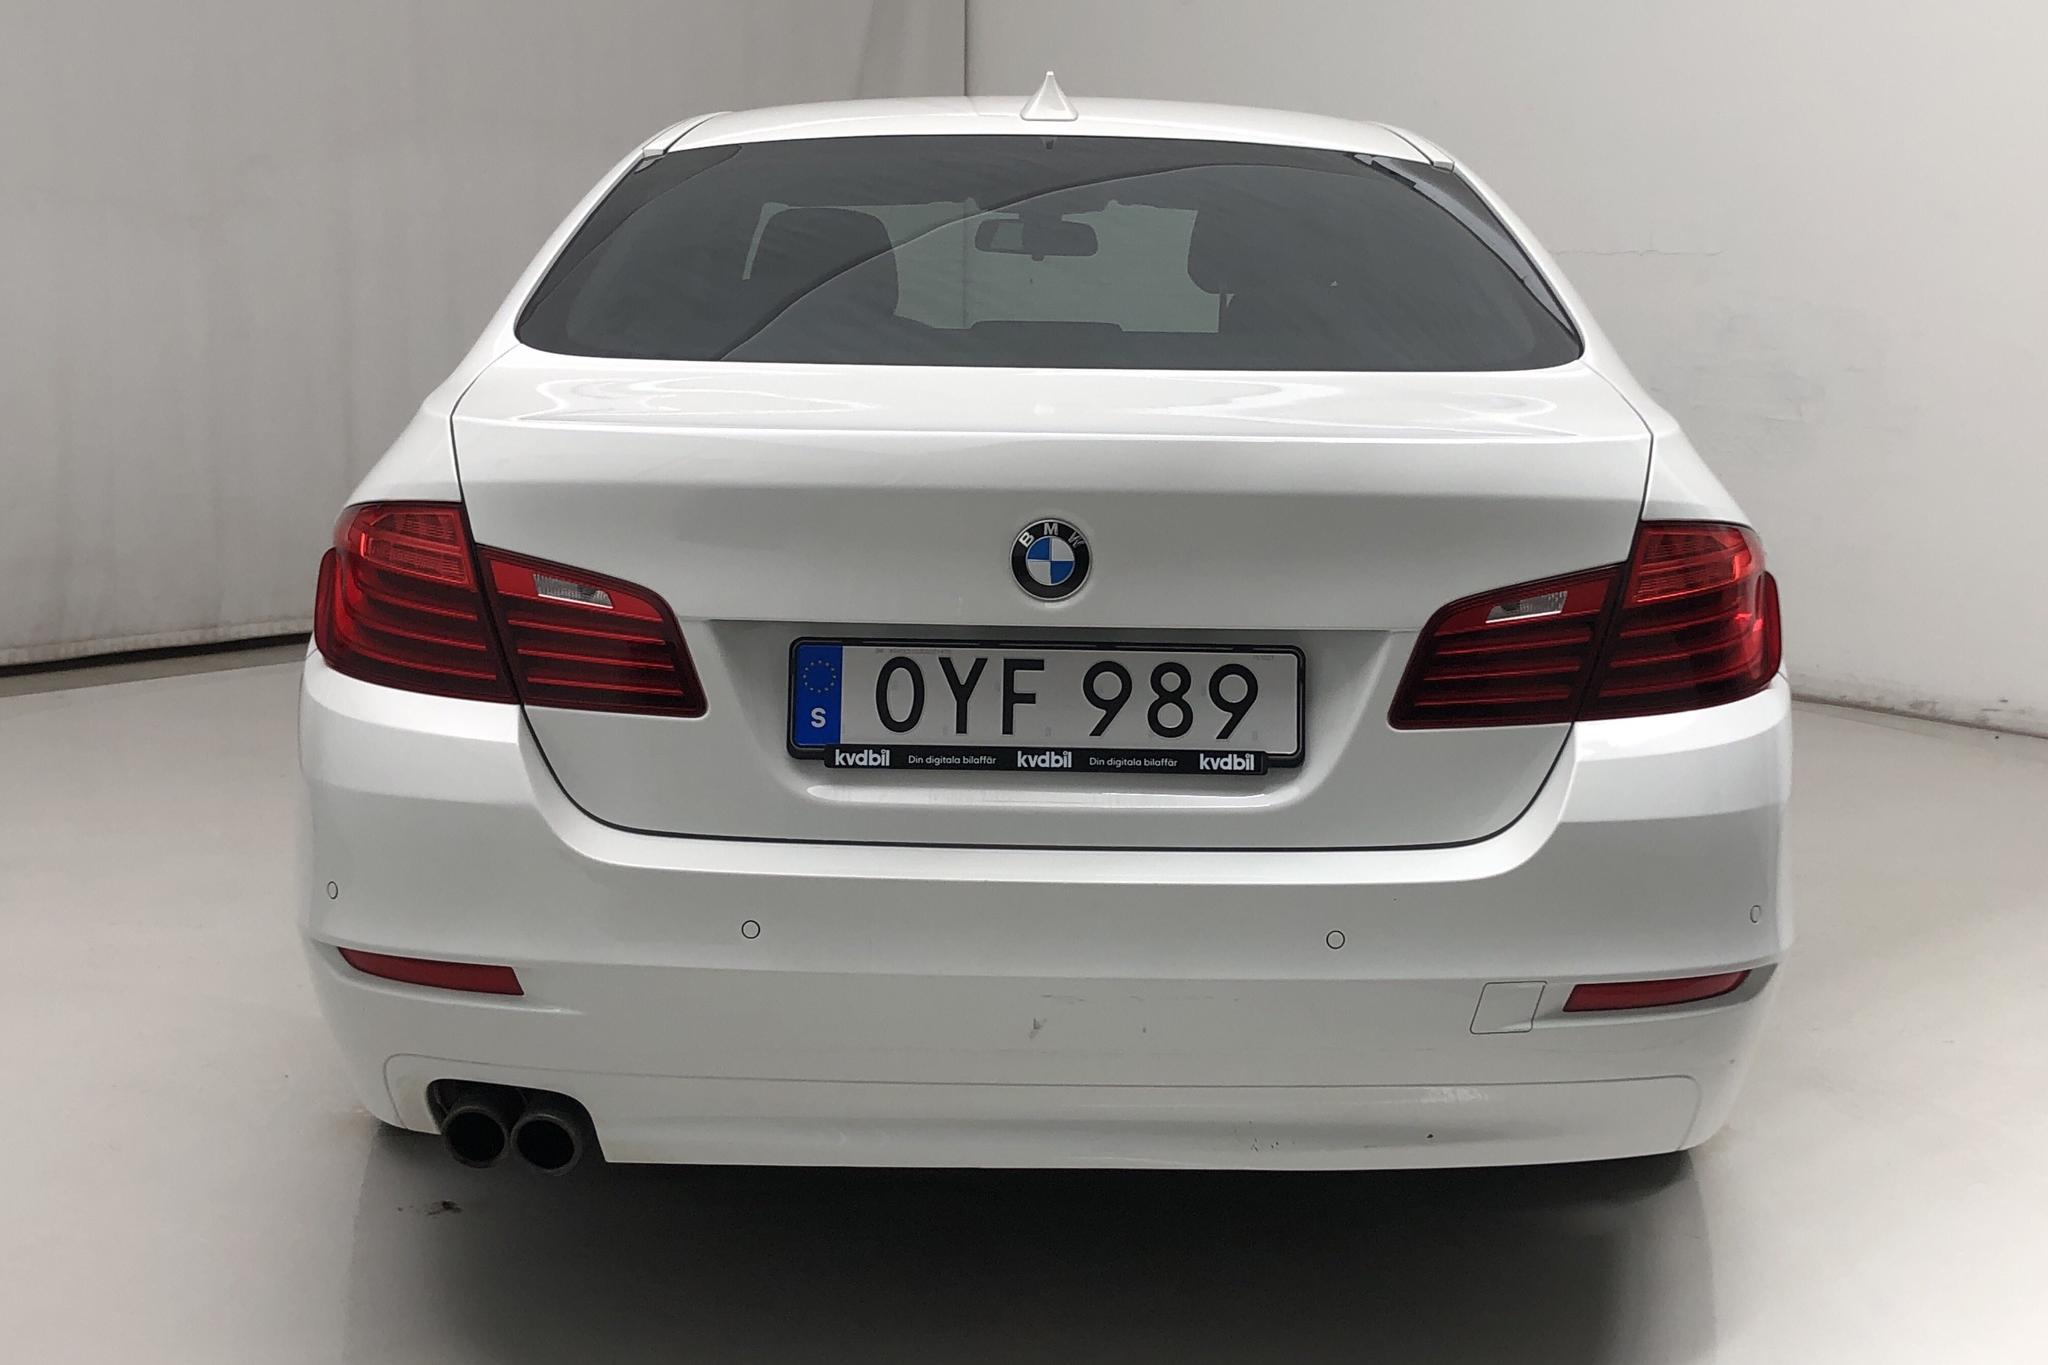 BMW 520d Sedan, F10 (190hk) - 123 470 km - Automatic - white - 2016